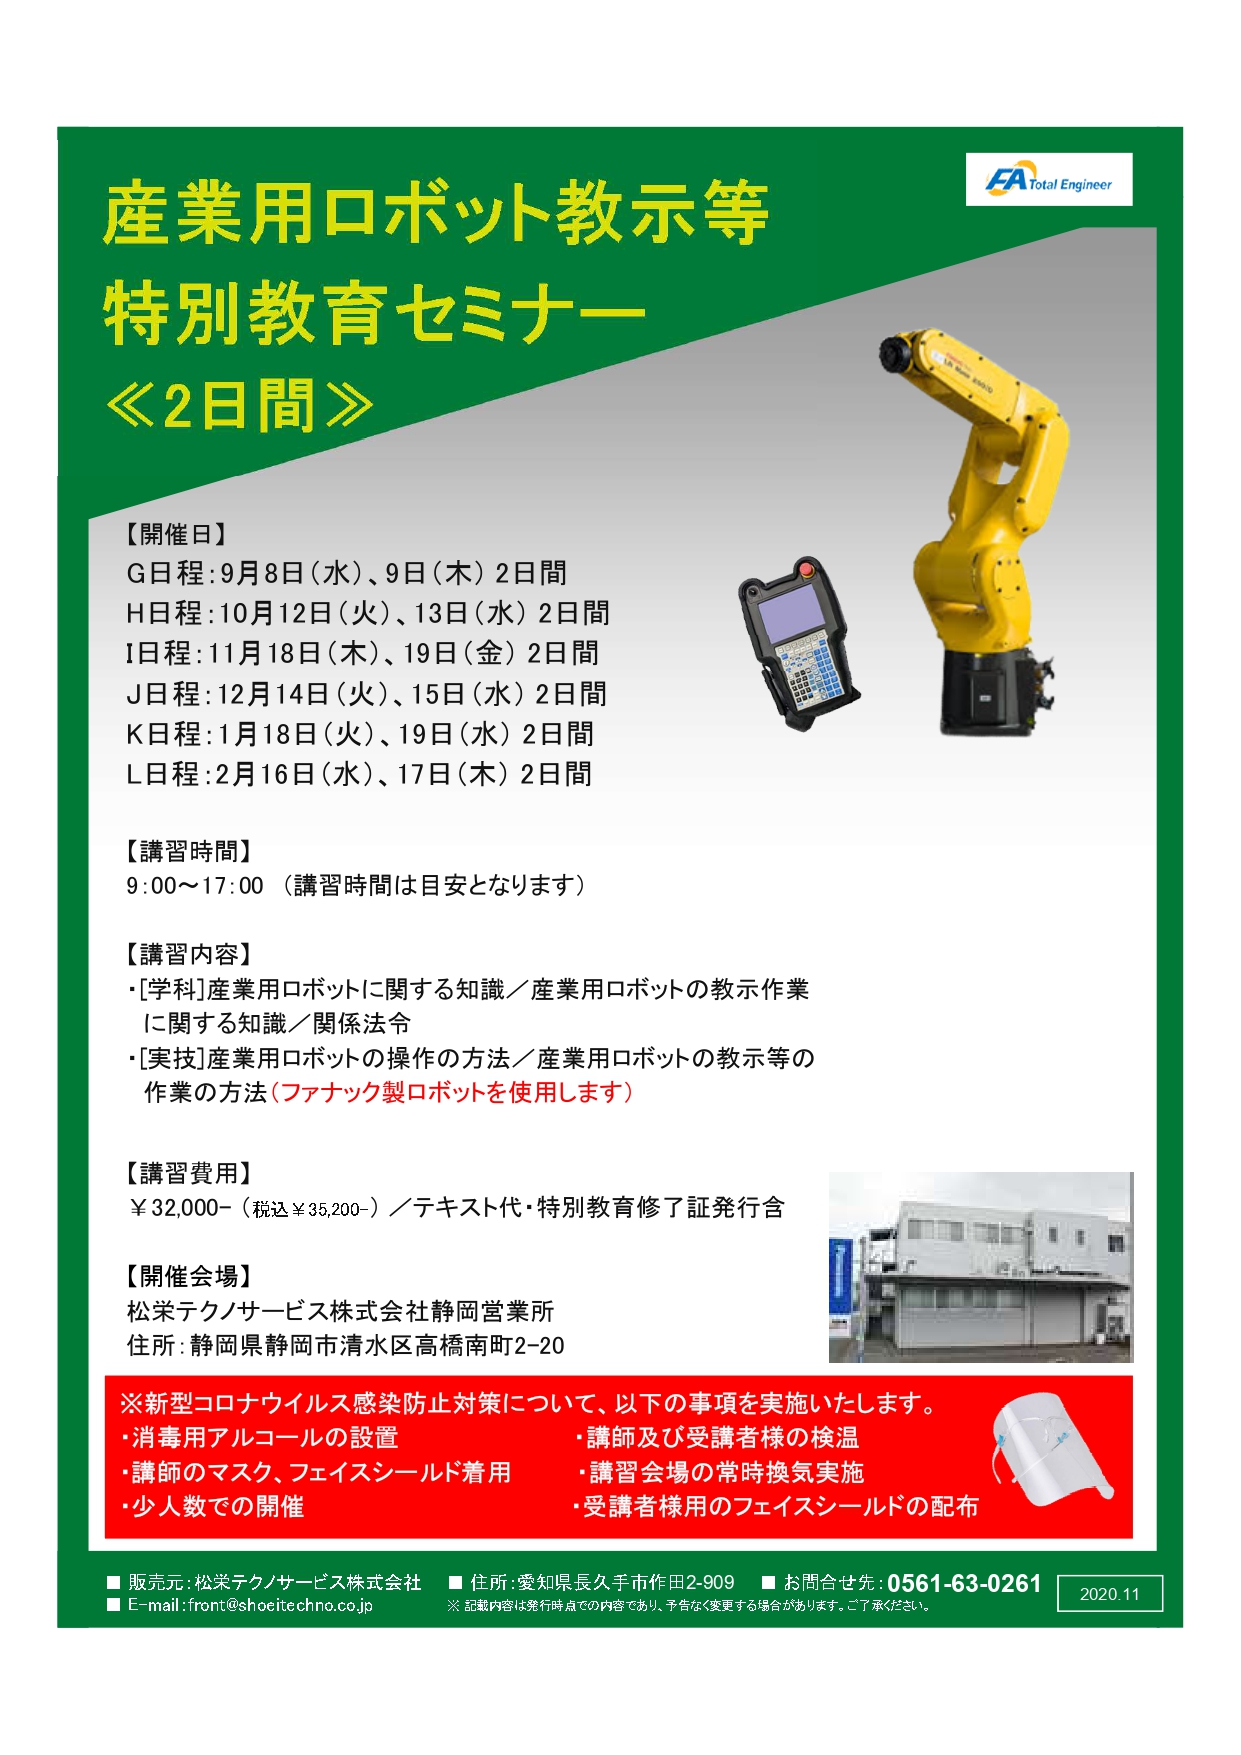 【静岡県開催】産業用ロボット特別教育（教示等）セミナー開催のお知らせ